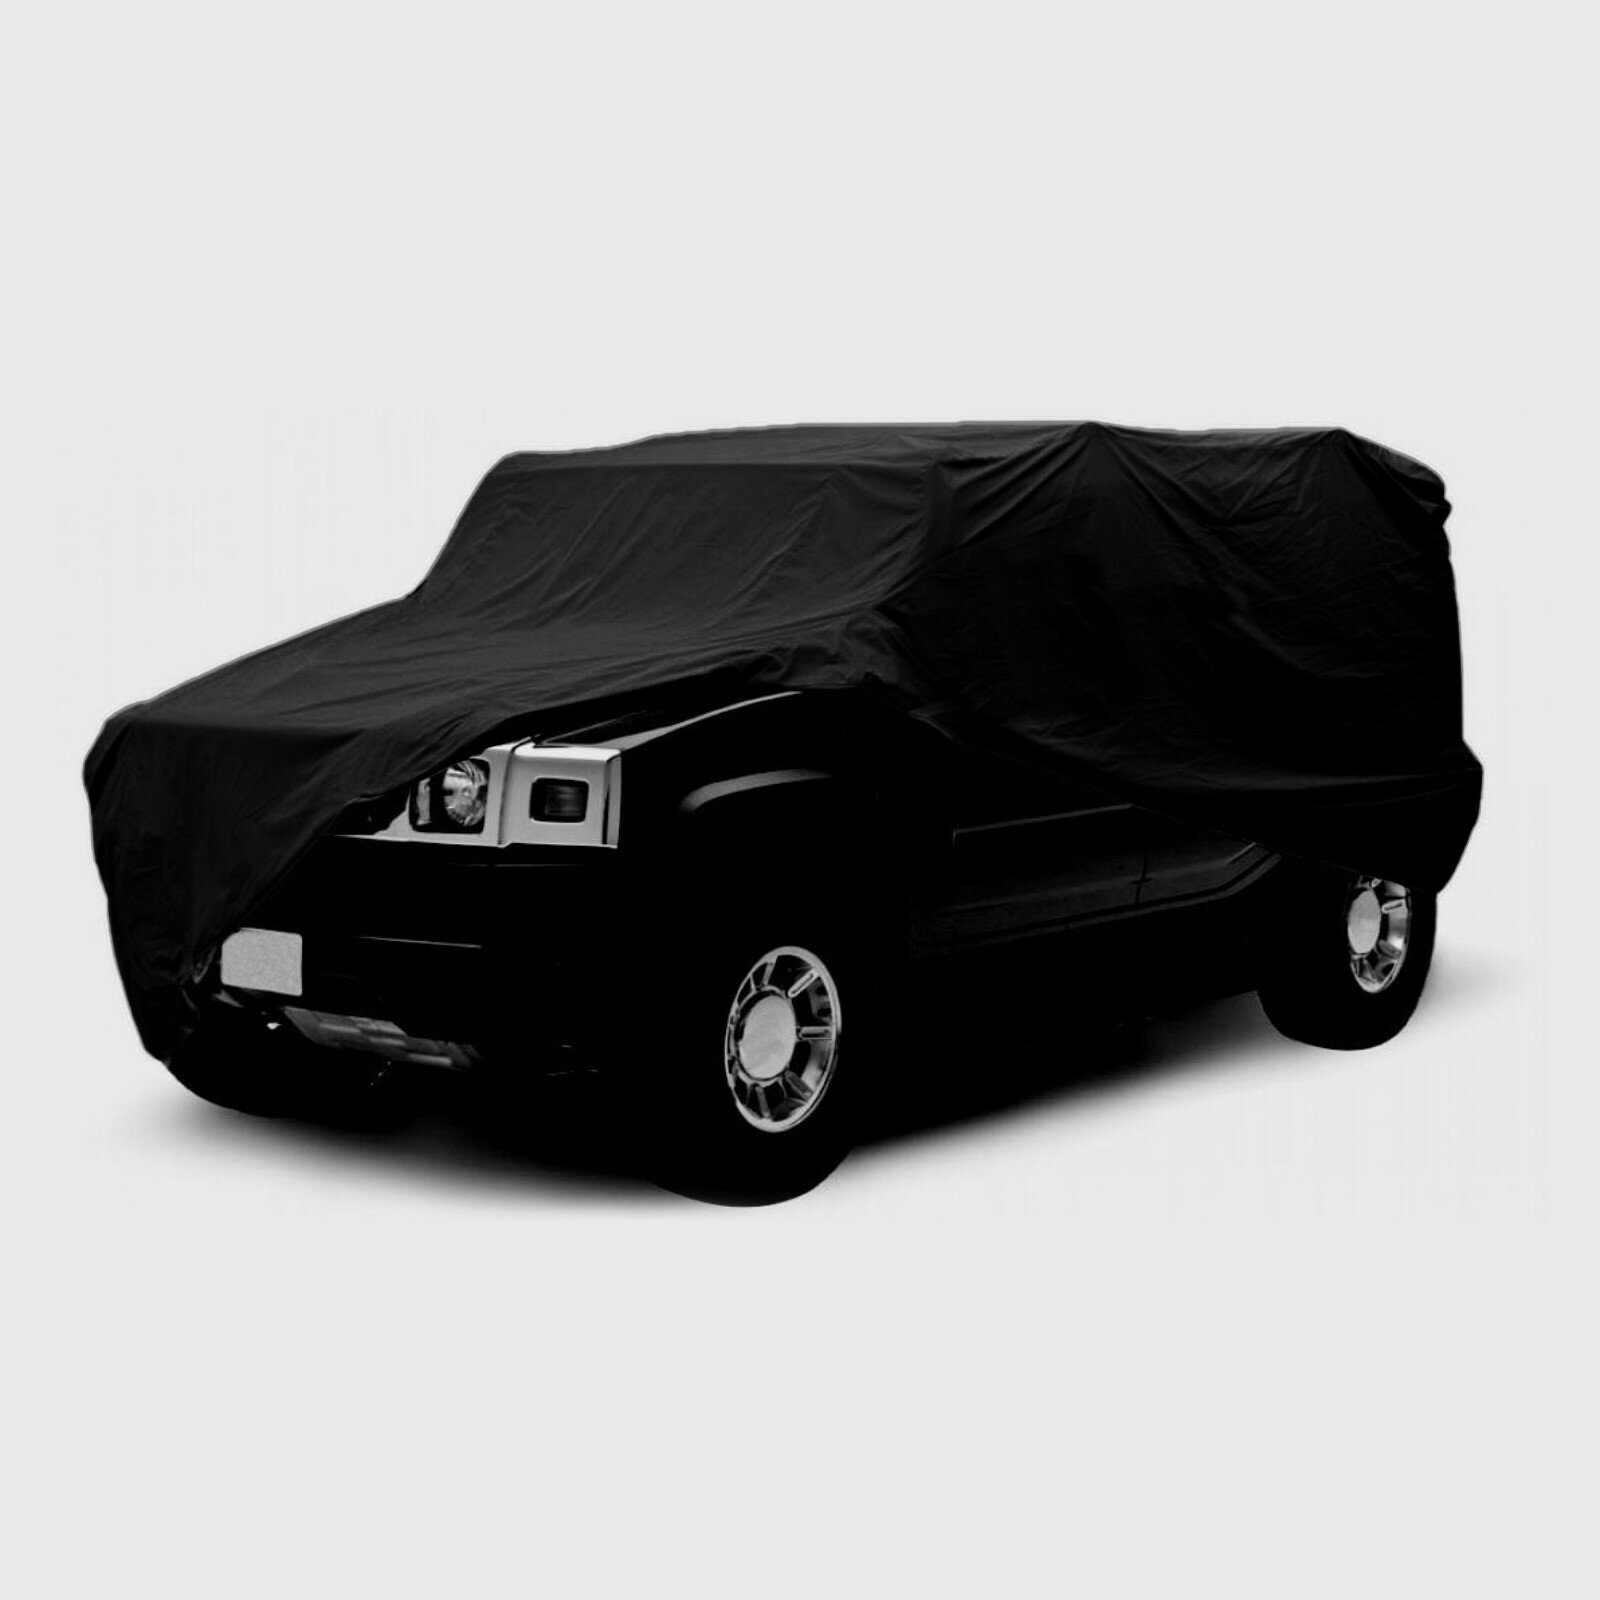 Тент автомобильный CARTAGE Premium внедорожник 530×200×150 см